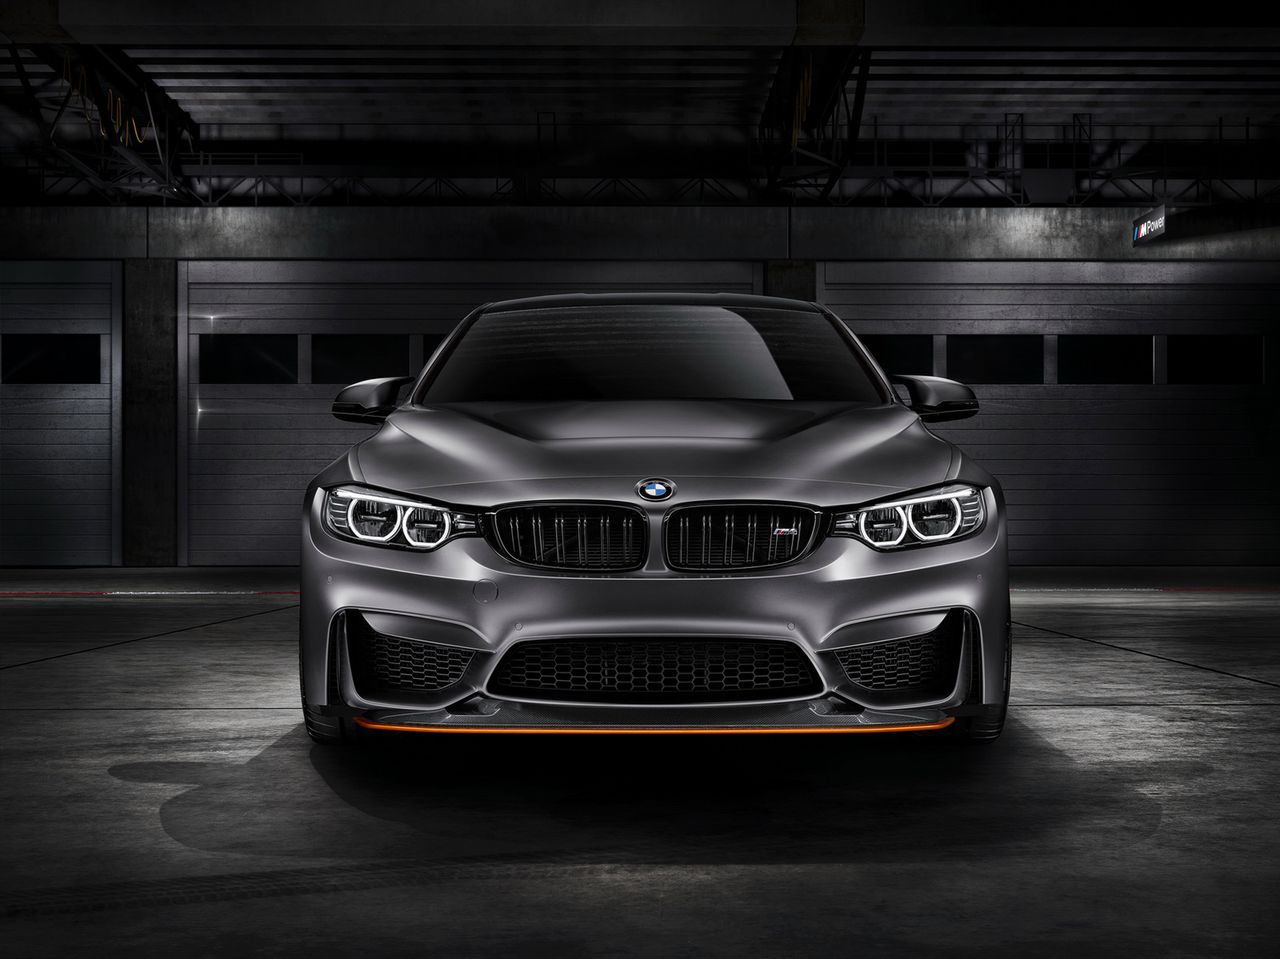 Koncepcyjne BMW M4 GTS zostało pokryte lakierem Frozen Dark Grey Metallic z akcentami w Acid Orange.